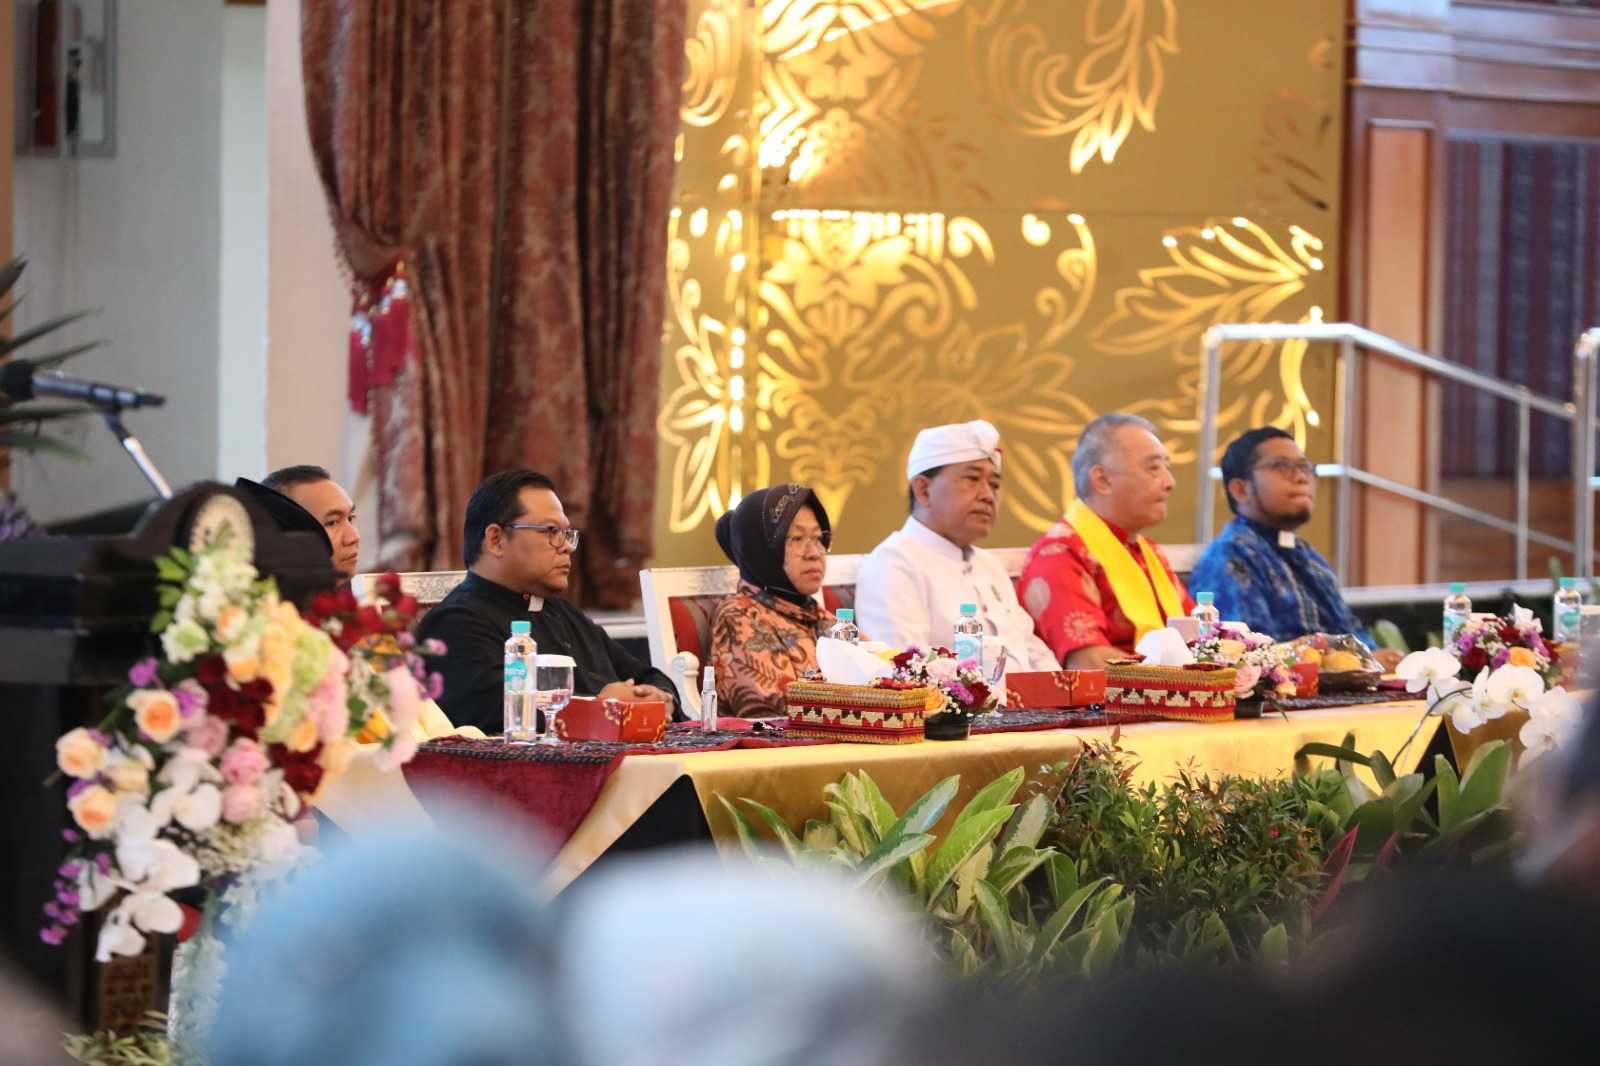 167 Bencana Terjadi di Indonesia Awal 2023, Kemensos Doa Bersama dengan 6 Pemuka Agama